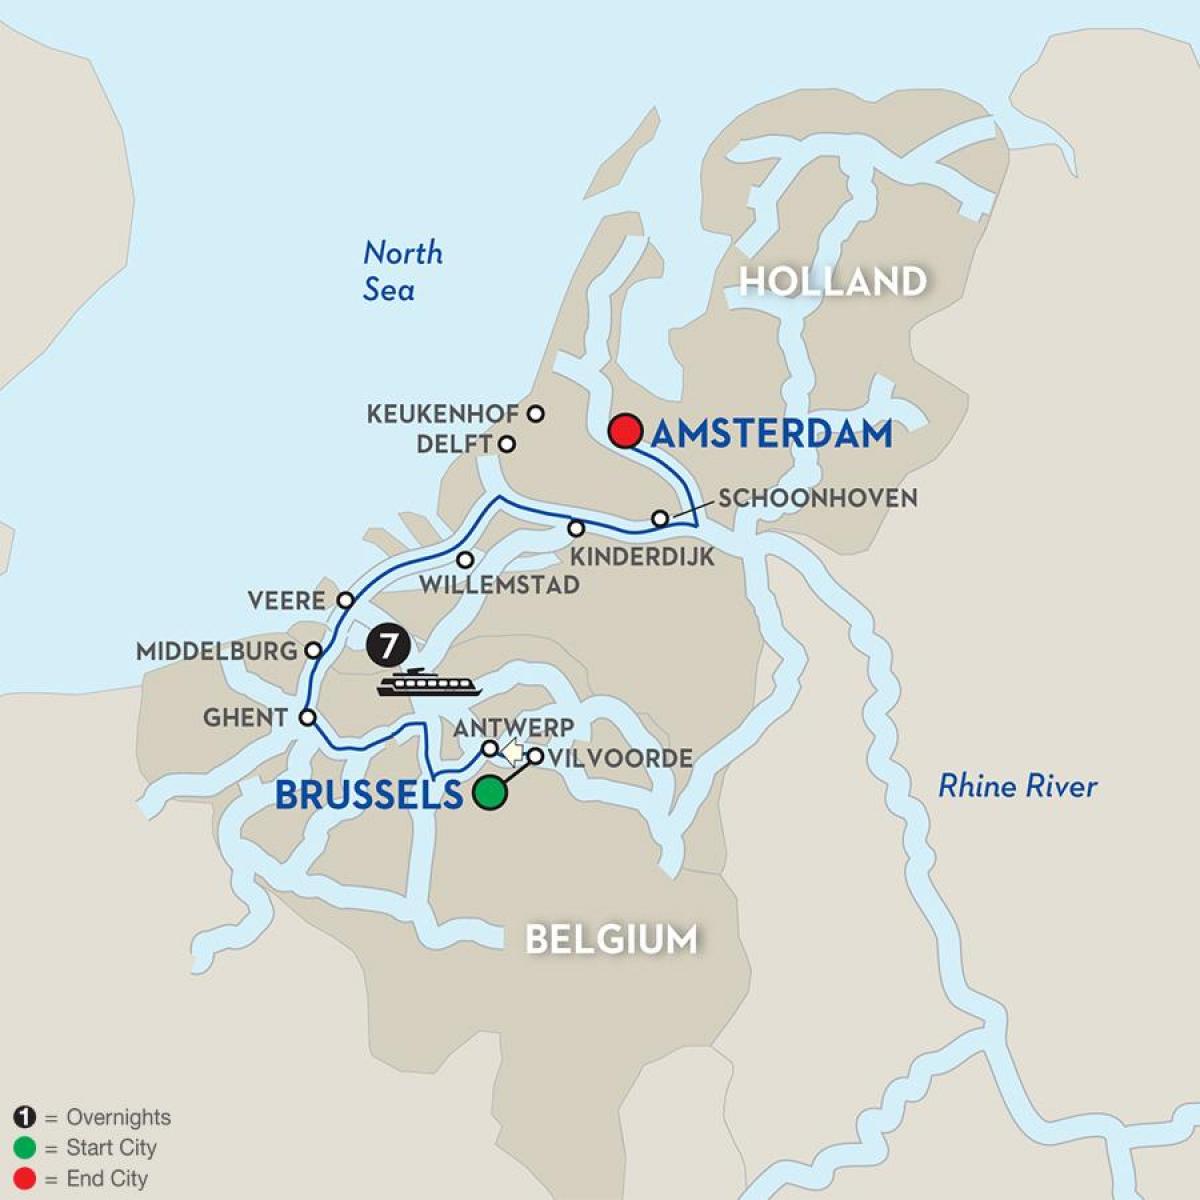 Bruxelles艇的地图